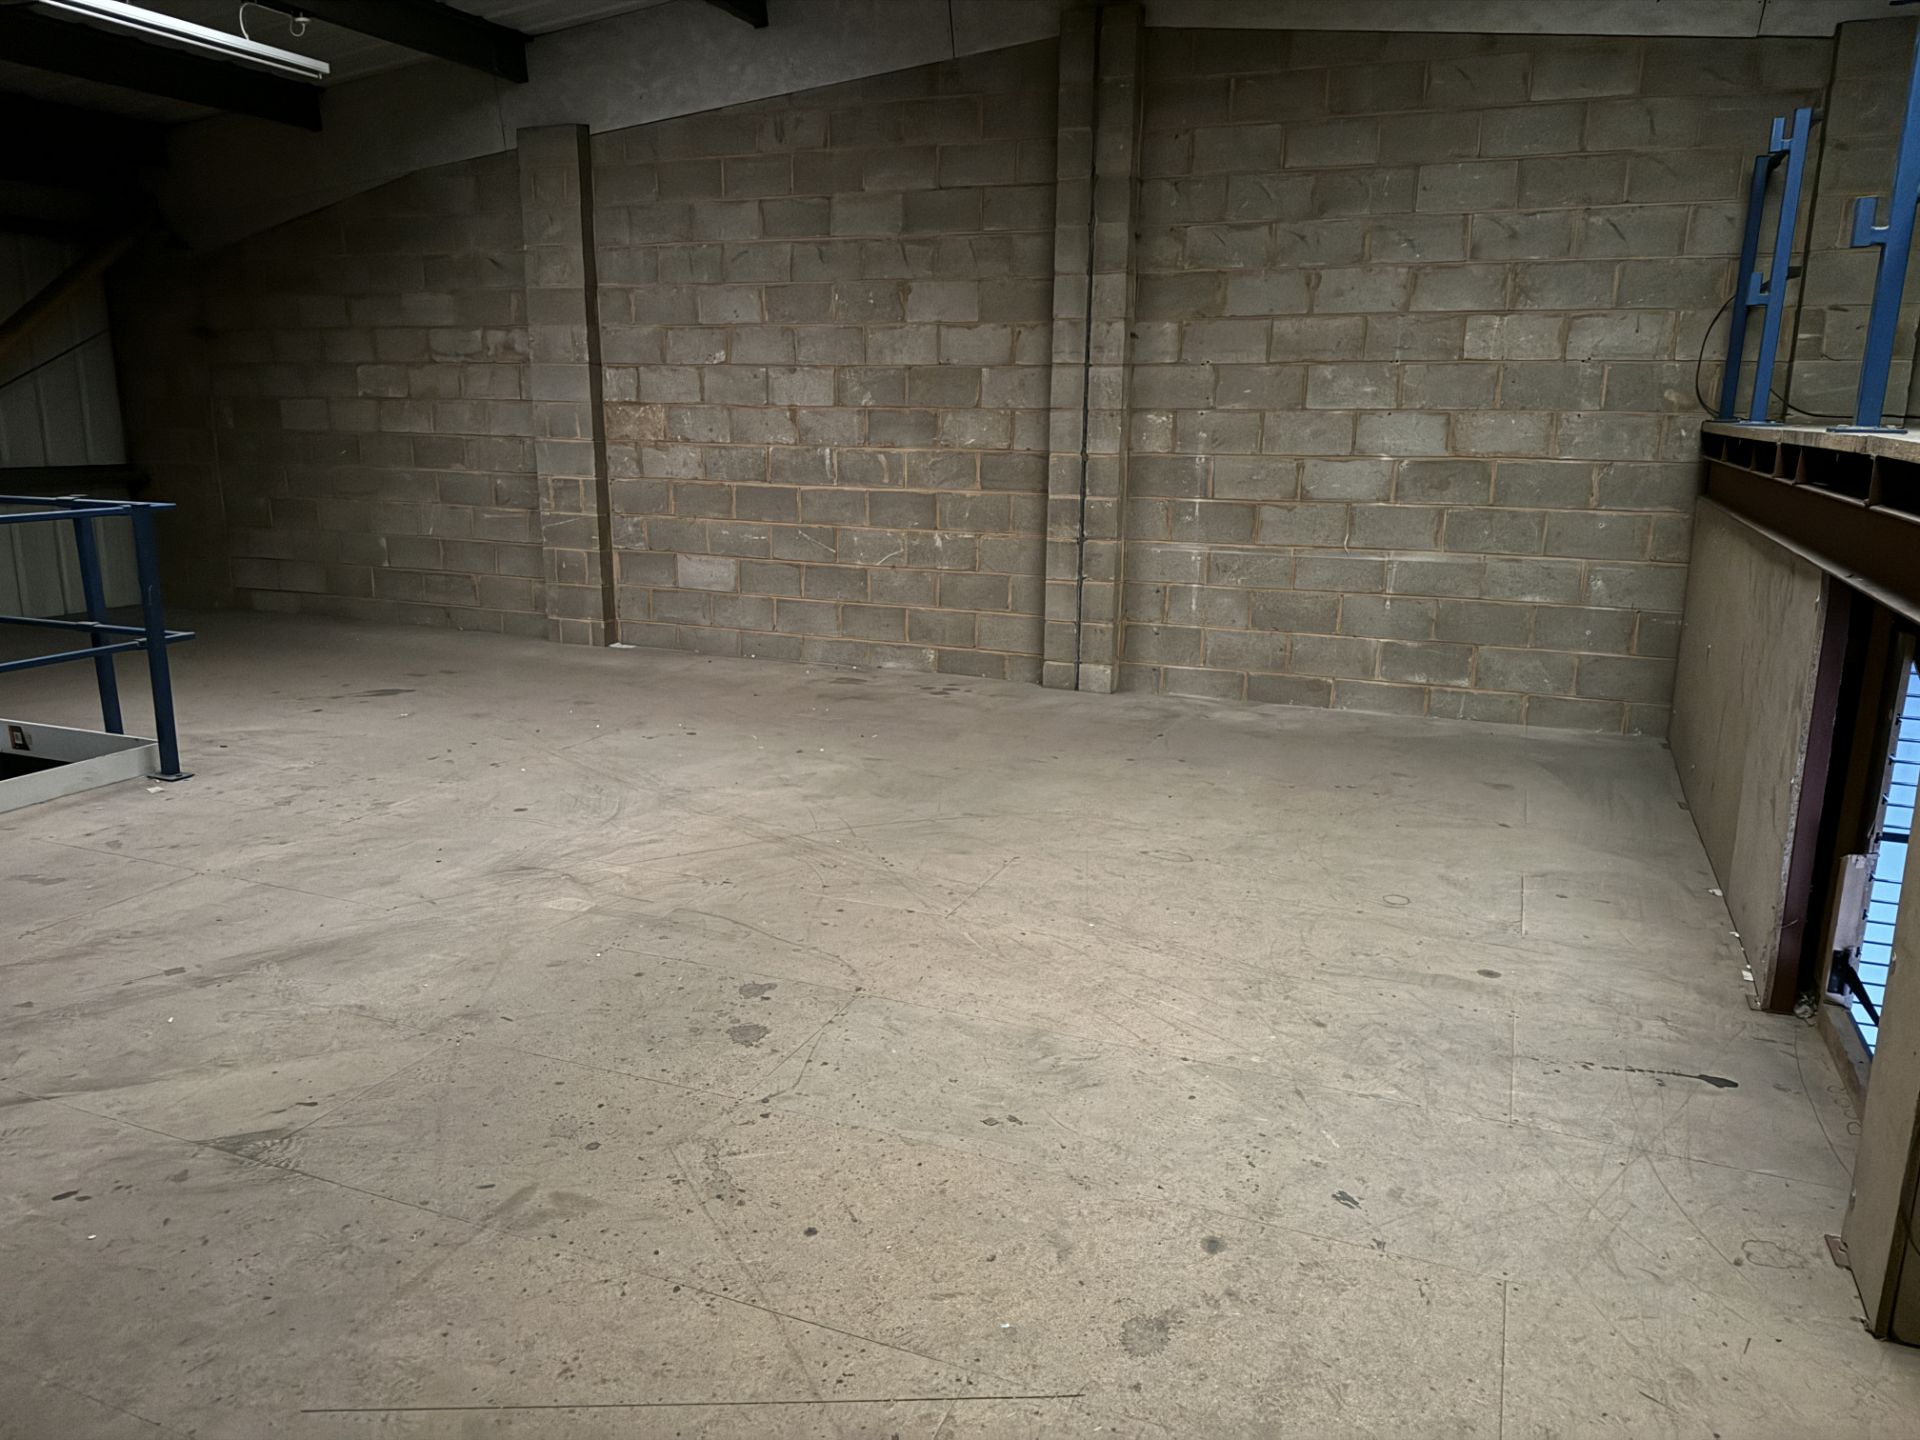 Mezzanine Floor, total floor area 14,400mm x 7700m - Bild 7 aus 10